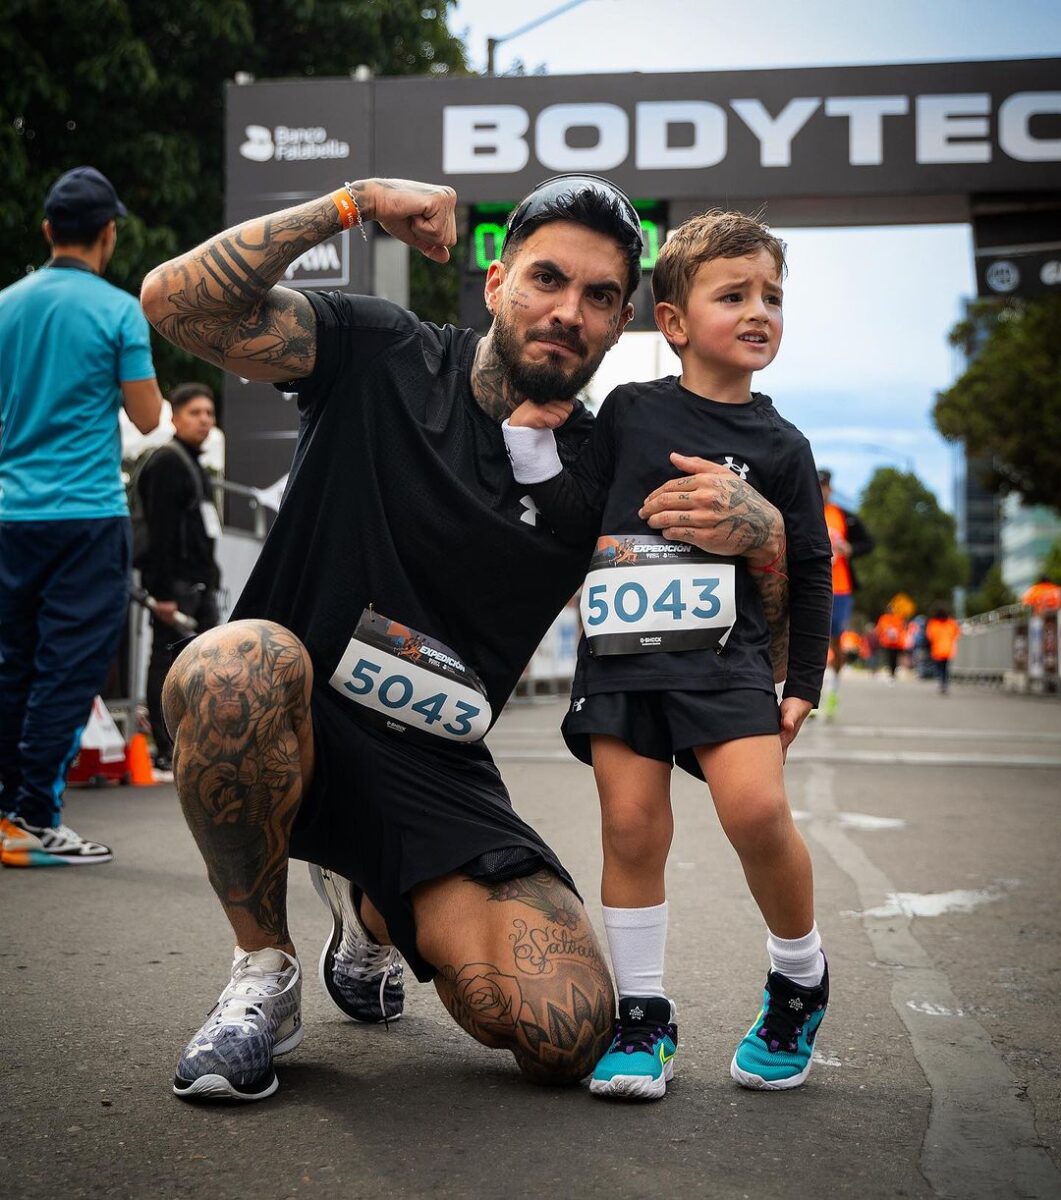 Fuertes críticas a Mateo Carvajal por dejar “tatuar” a su hijo de 4 años El pequeño Salvador, hijo de Melina Ramírez y Mateo, estaba muy emocionado por acompañar a su papá a tatuarse, tanto así que se antojó de tener sus propios "tatuajes".